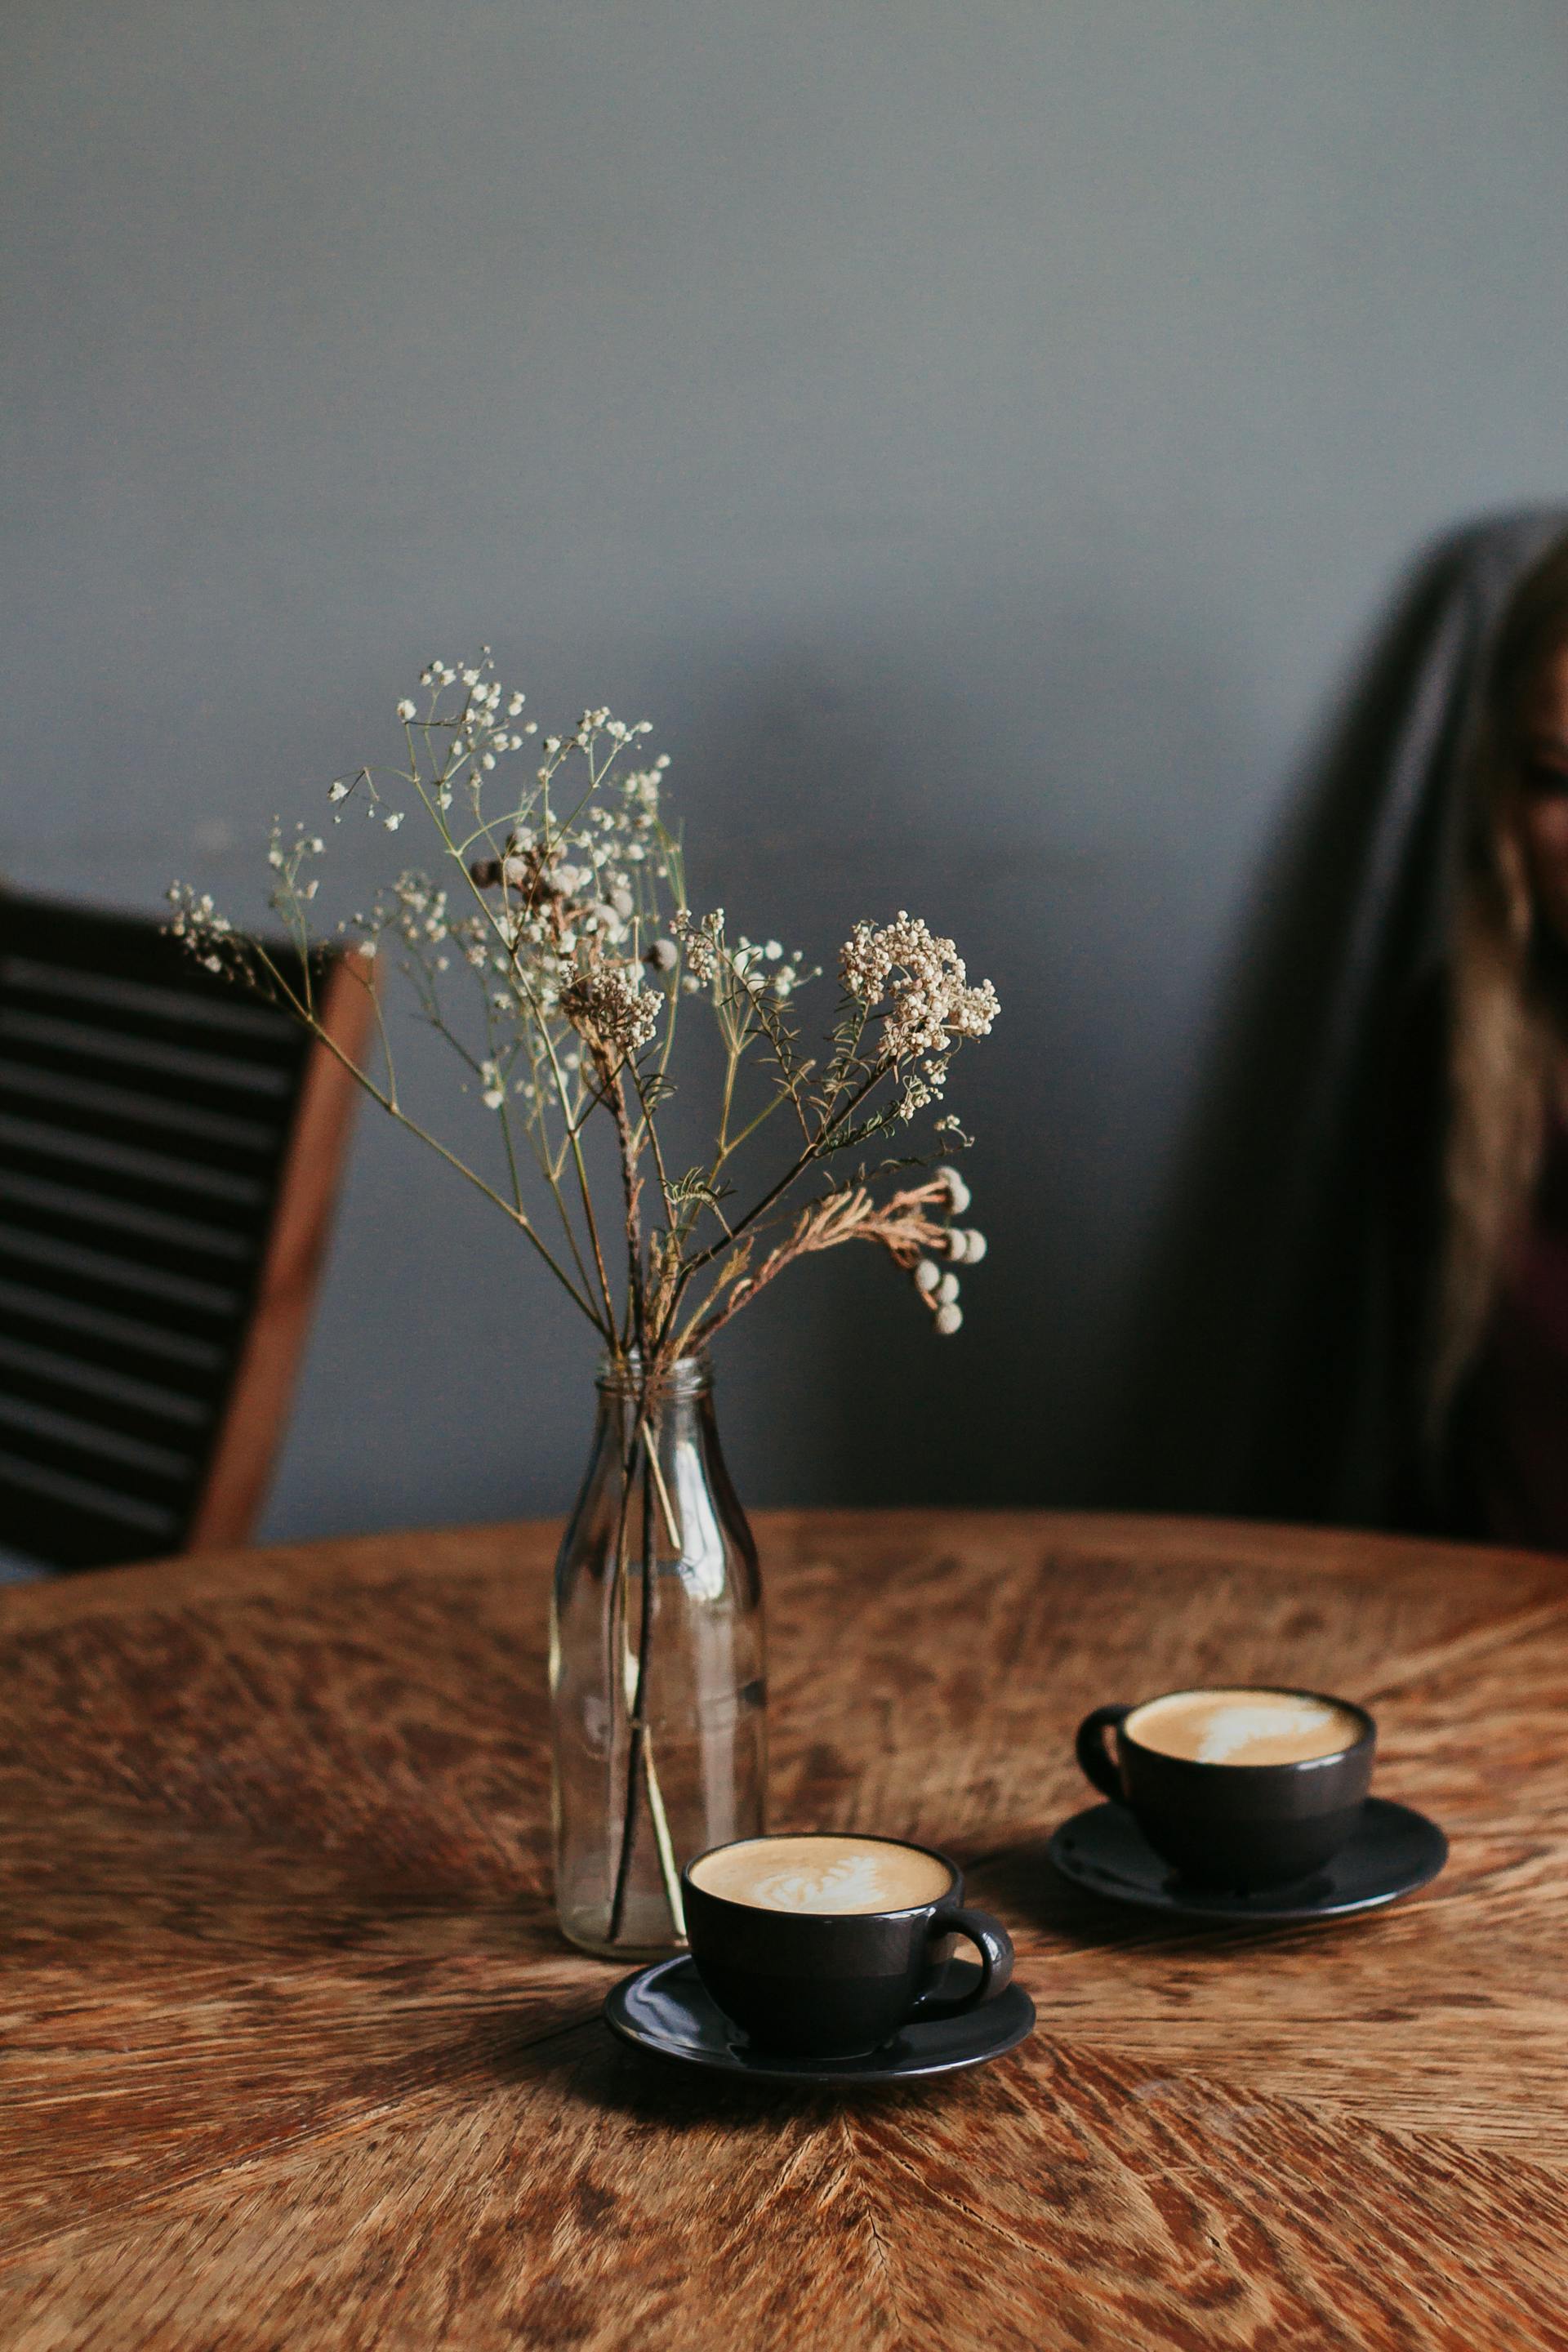 Deux tasses de café près d'un vase de fleurs sur une table | Source : Pexels